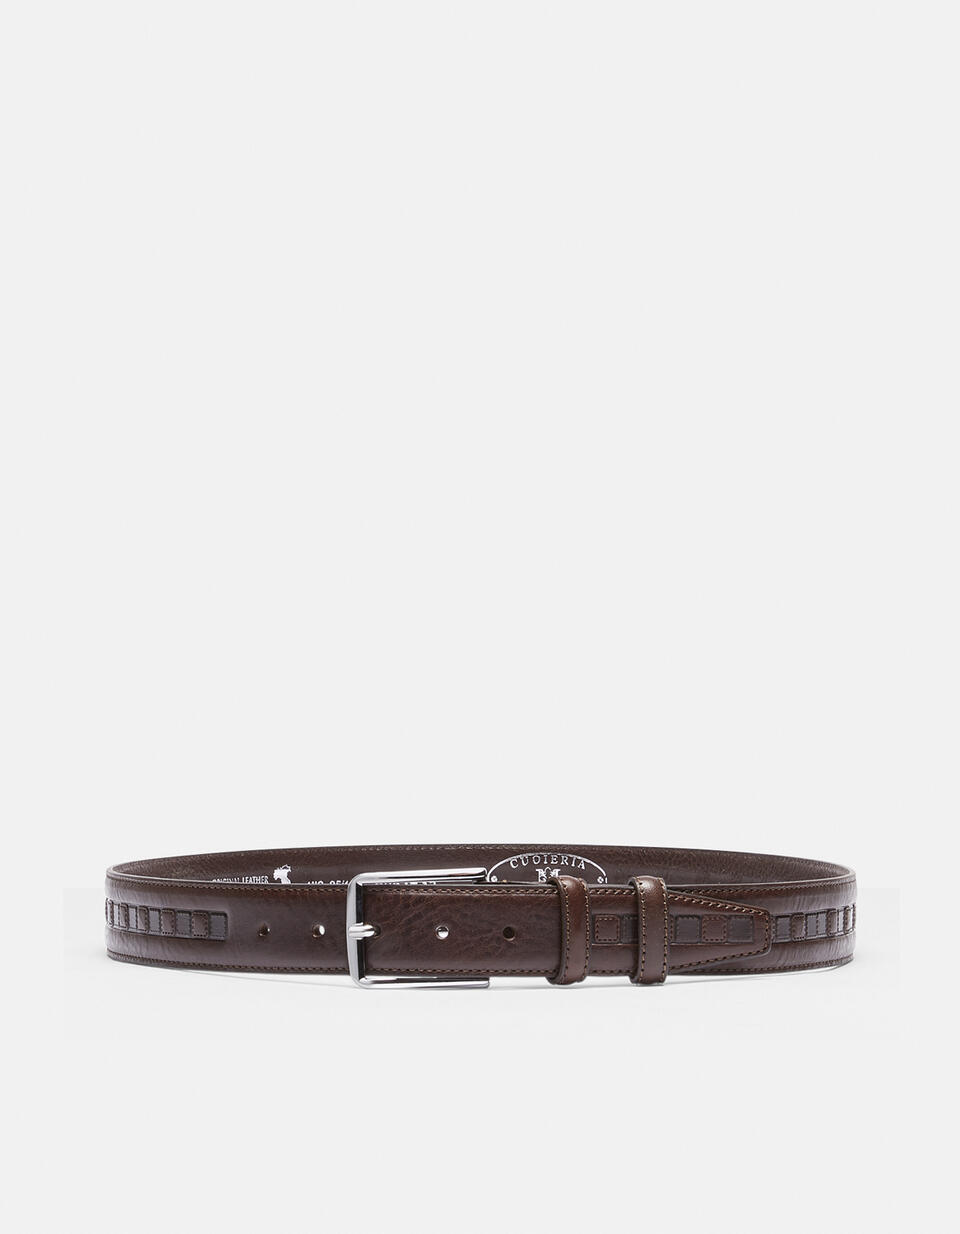 Belt leather working height 3.5 cm. - Men Belts | Belts  - Men Belts | BeltsCuoieria Fiorentina